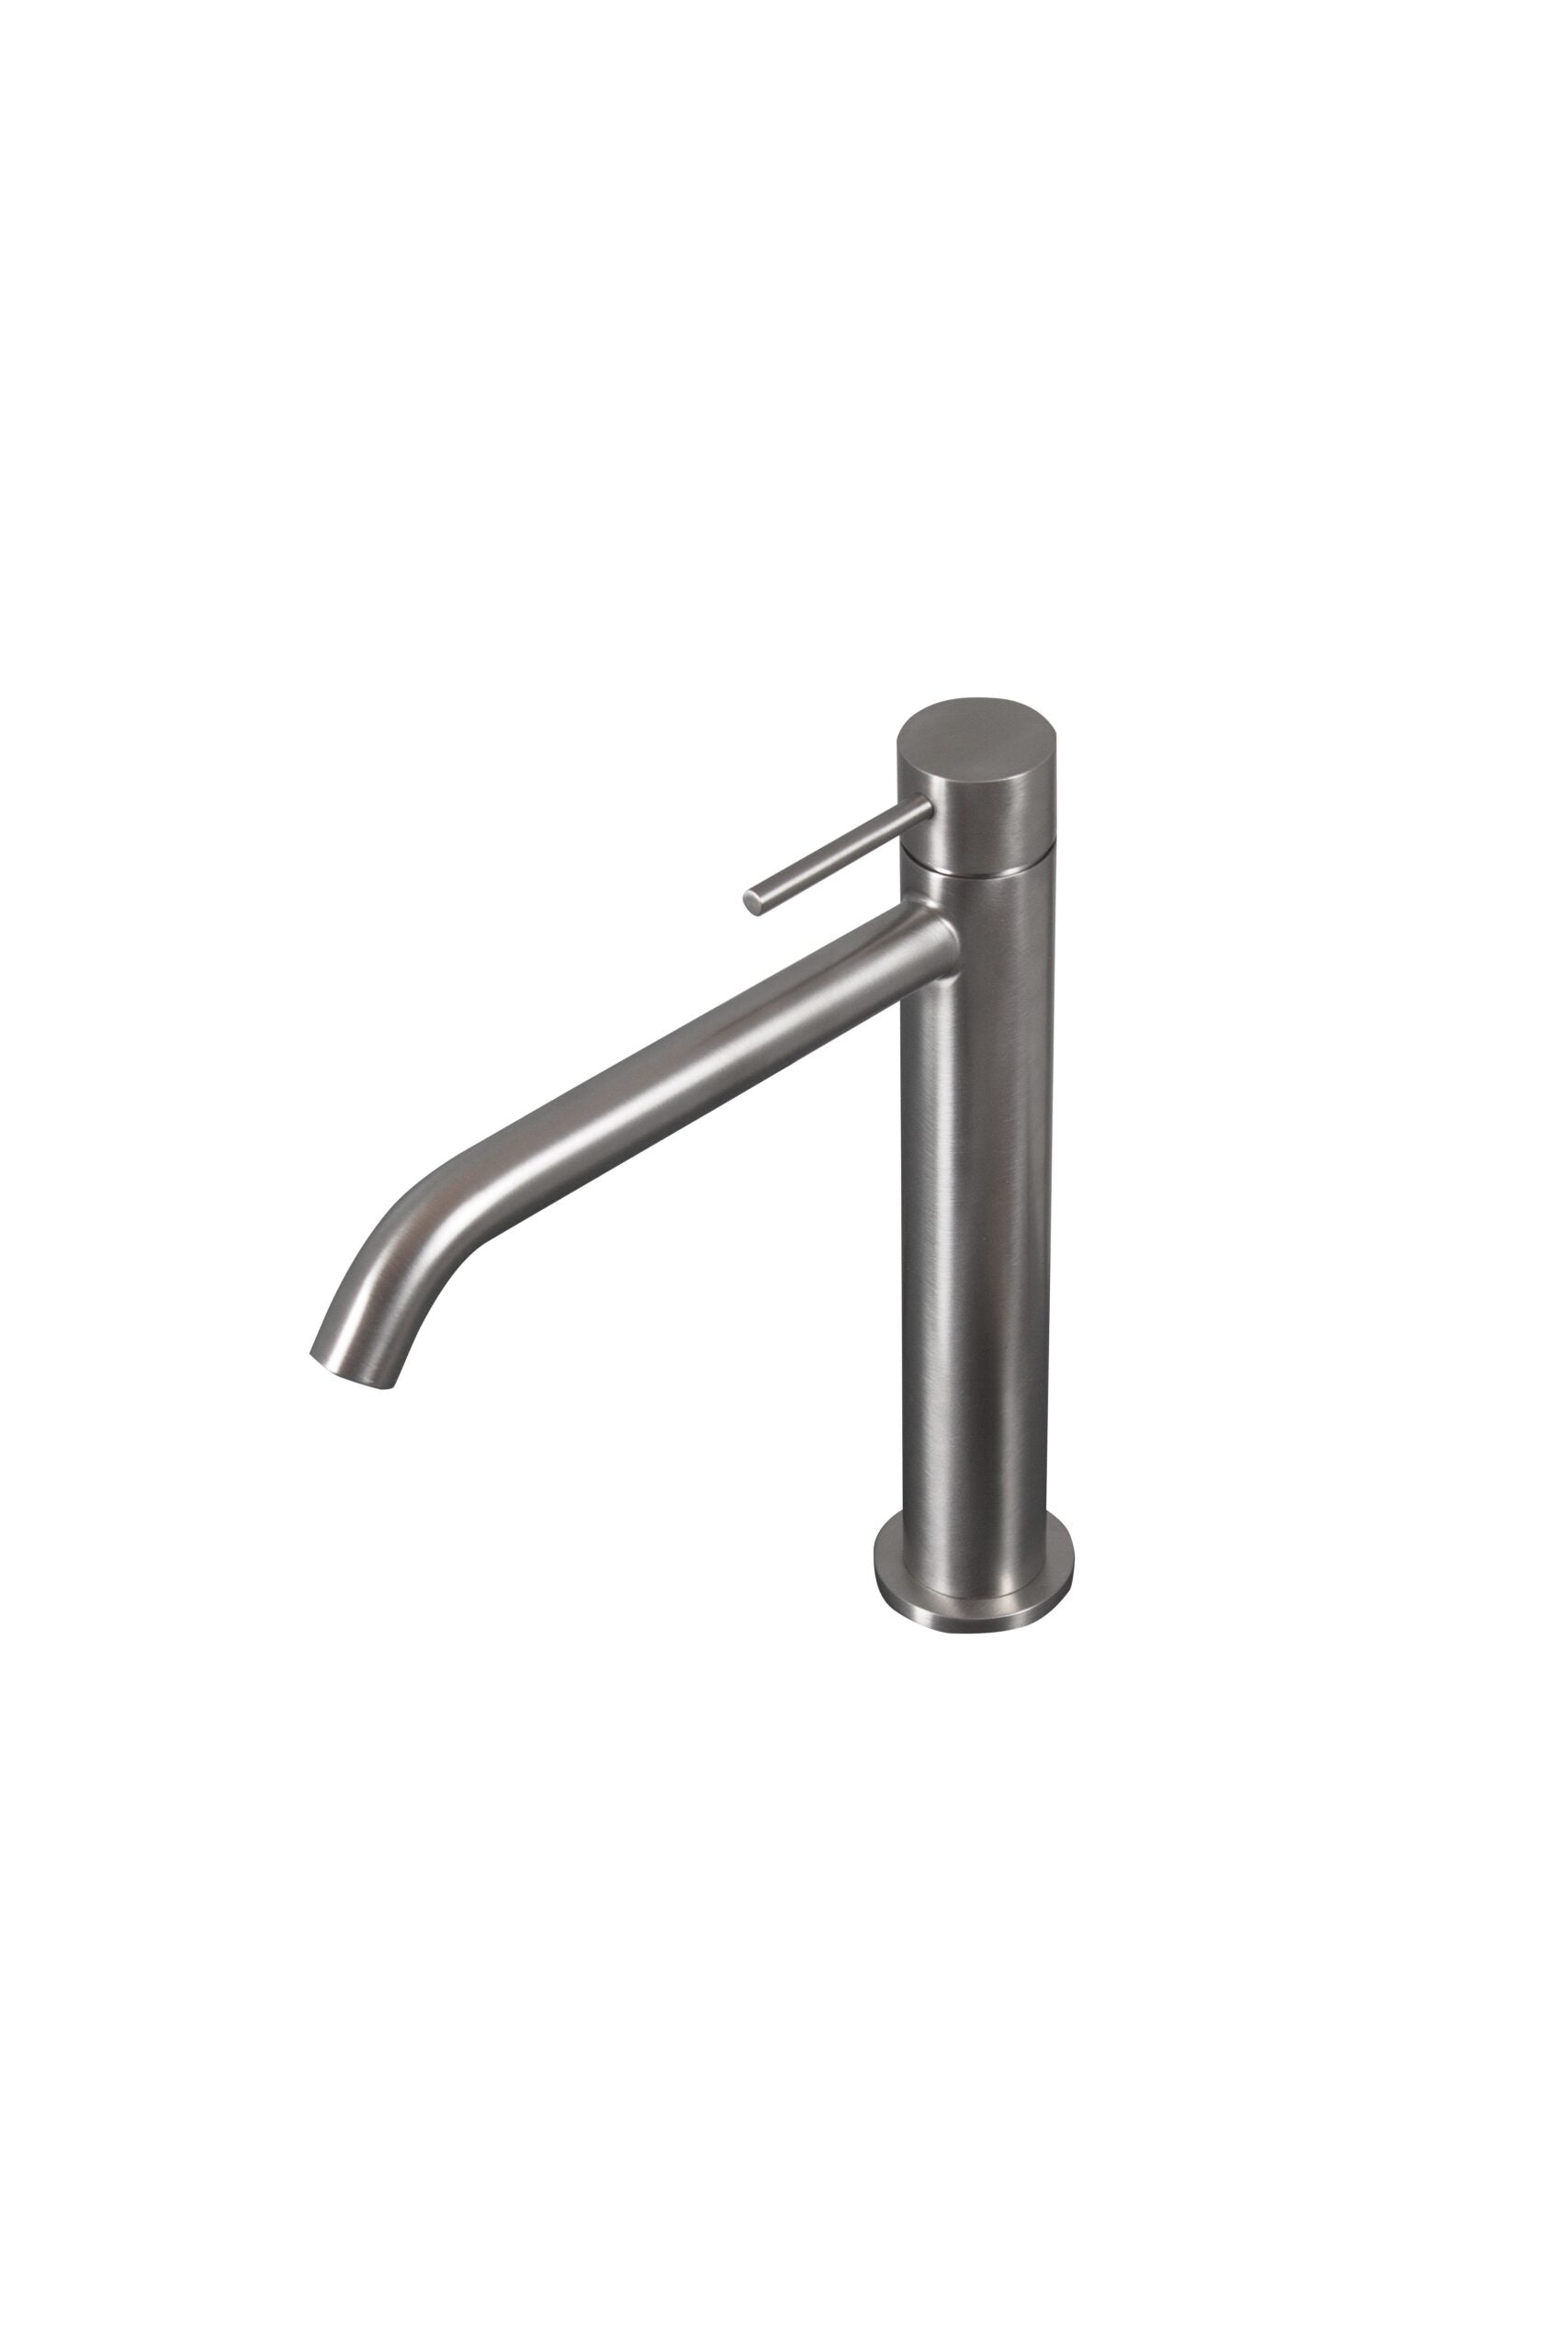 Tubico Tevere rubinetto miscelatore alto per lavabo in acciaio inox 316L nero Made in Italy T44166B